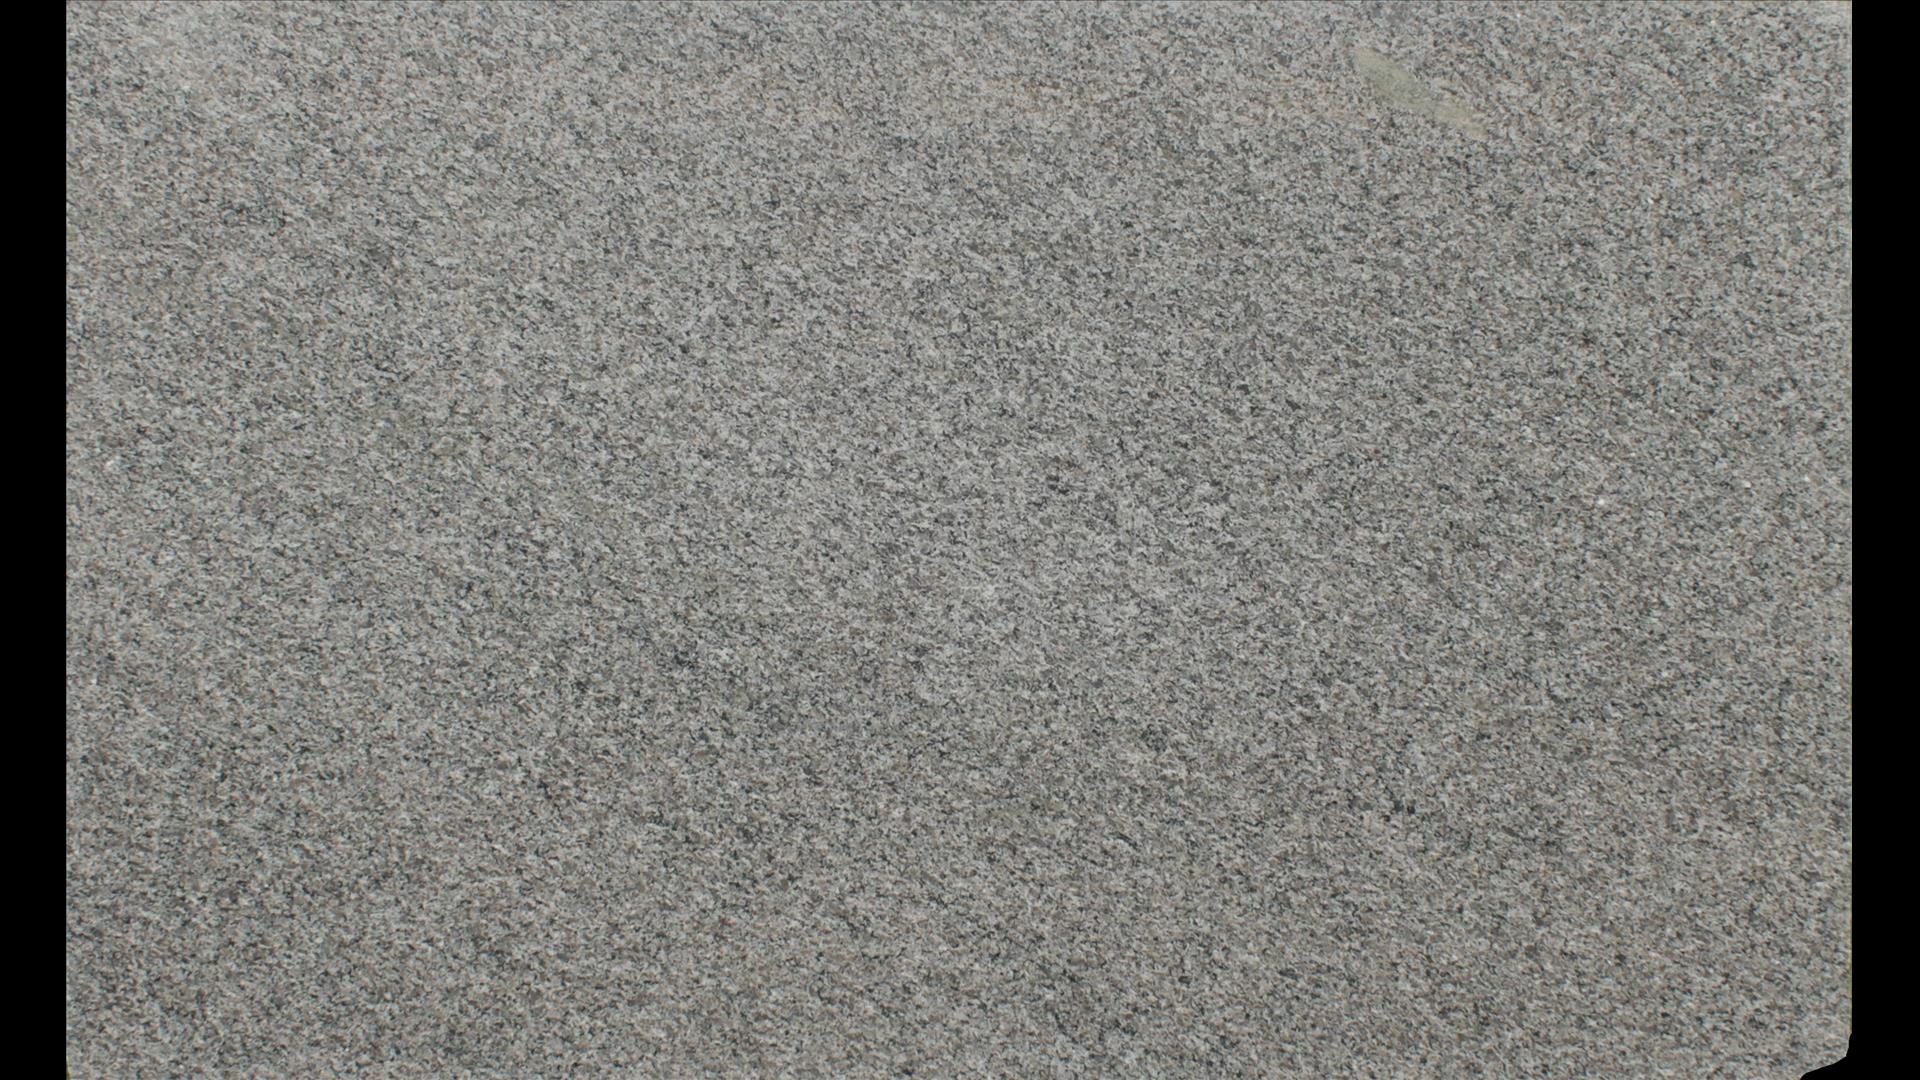 CALEDONIA Granite Slabs